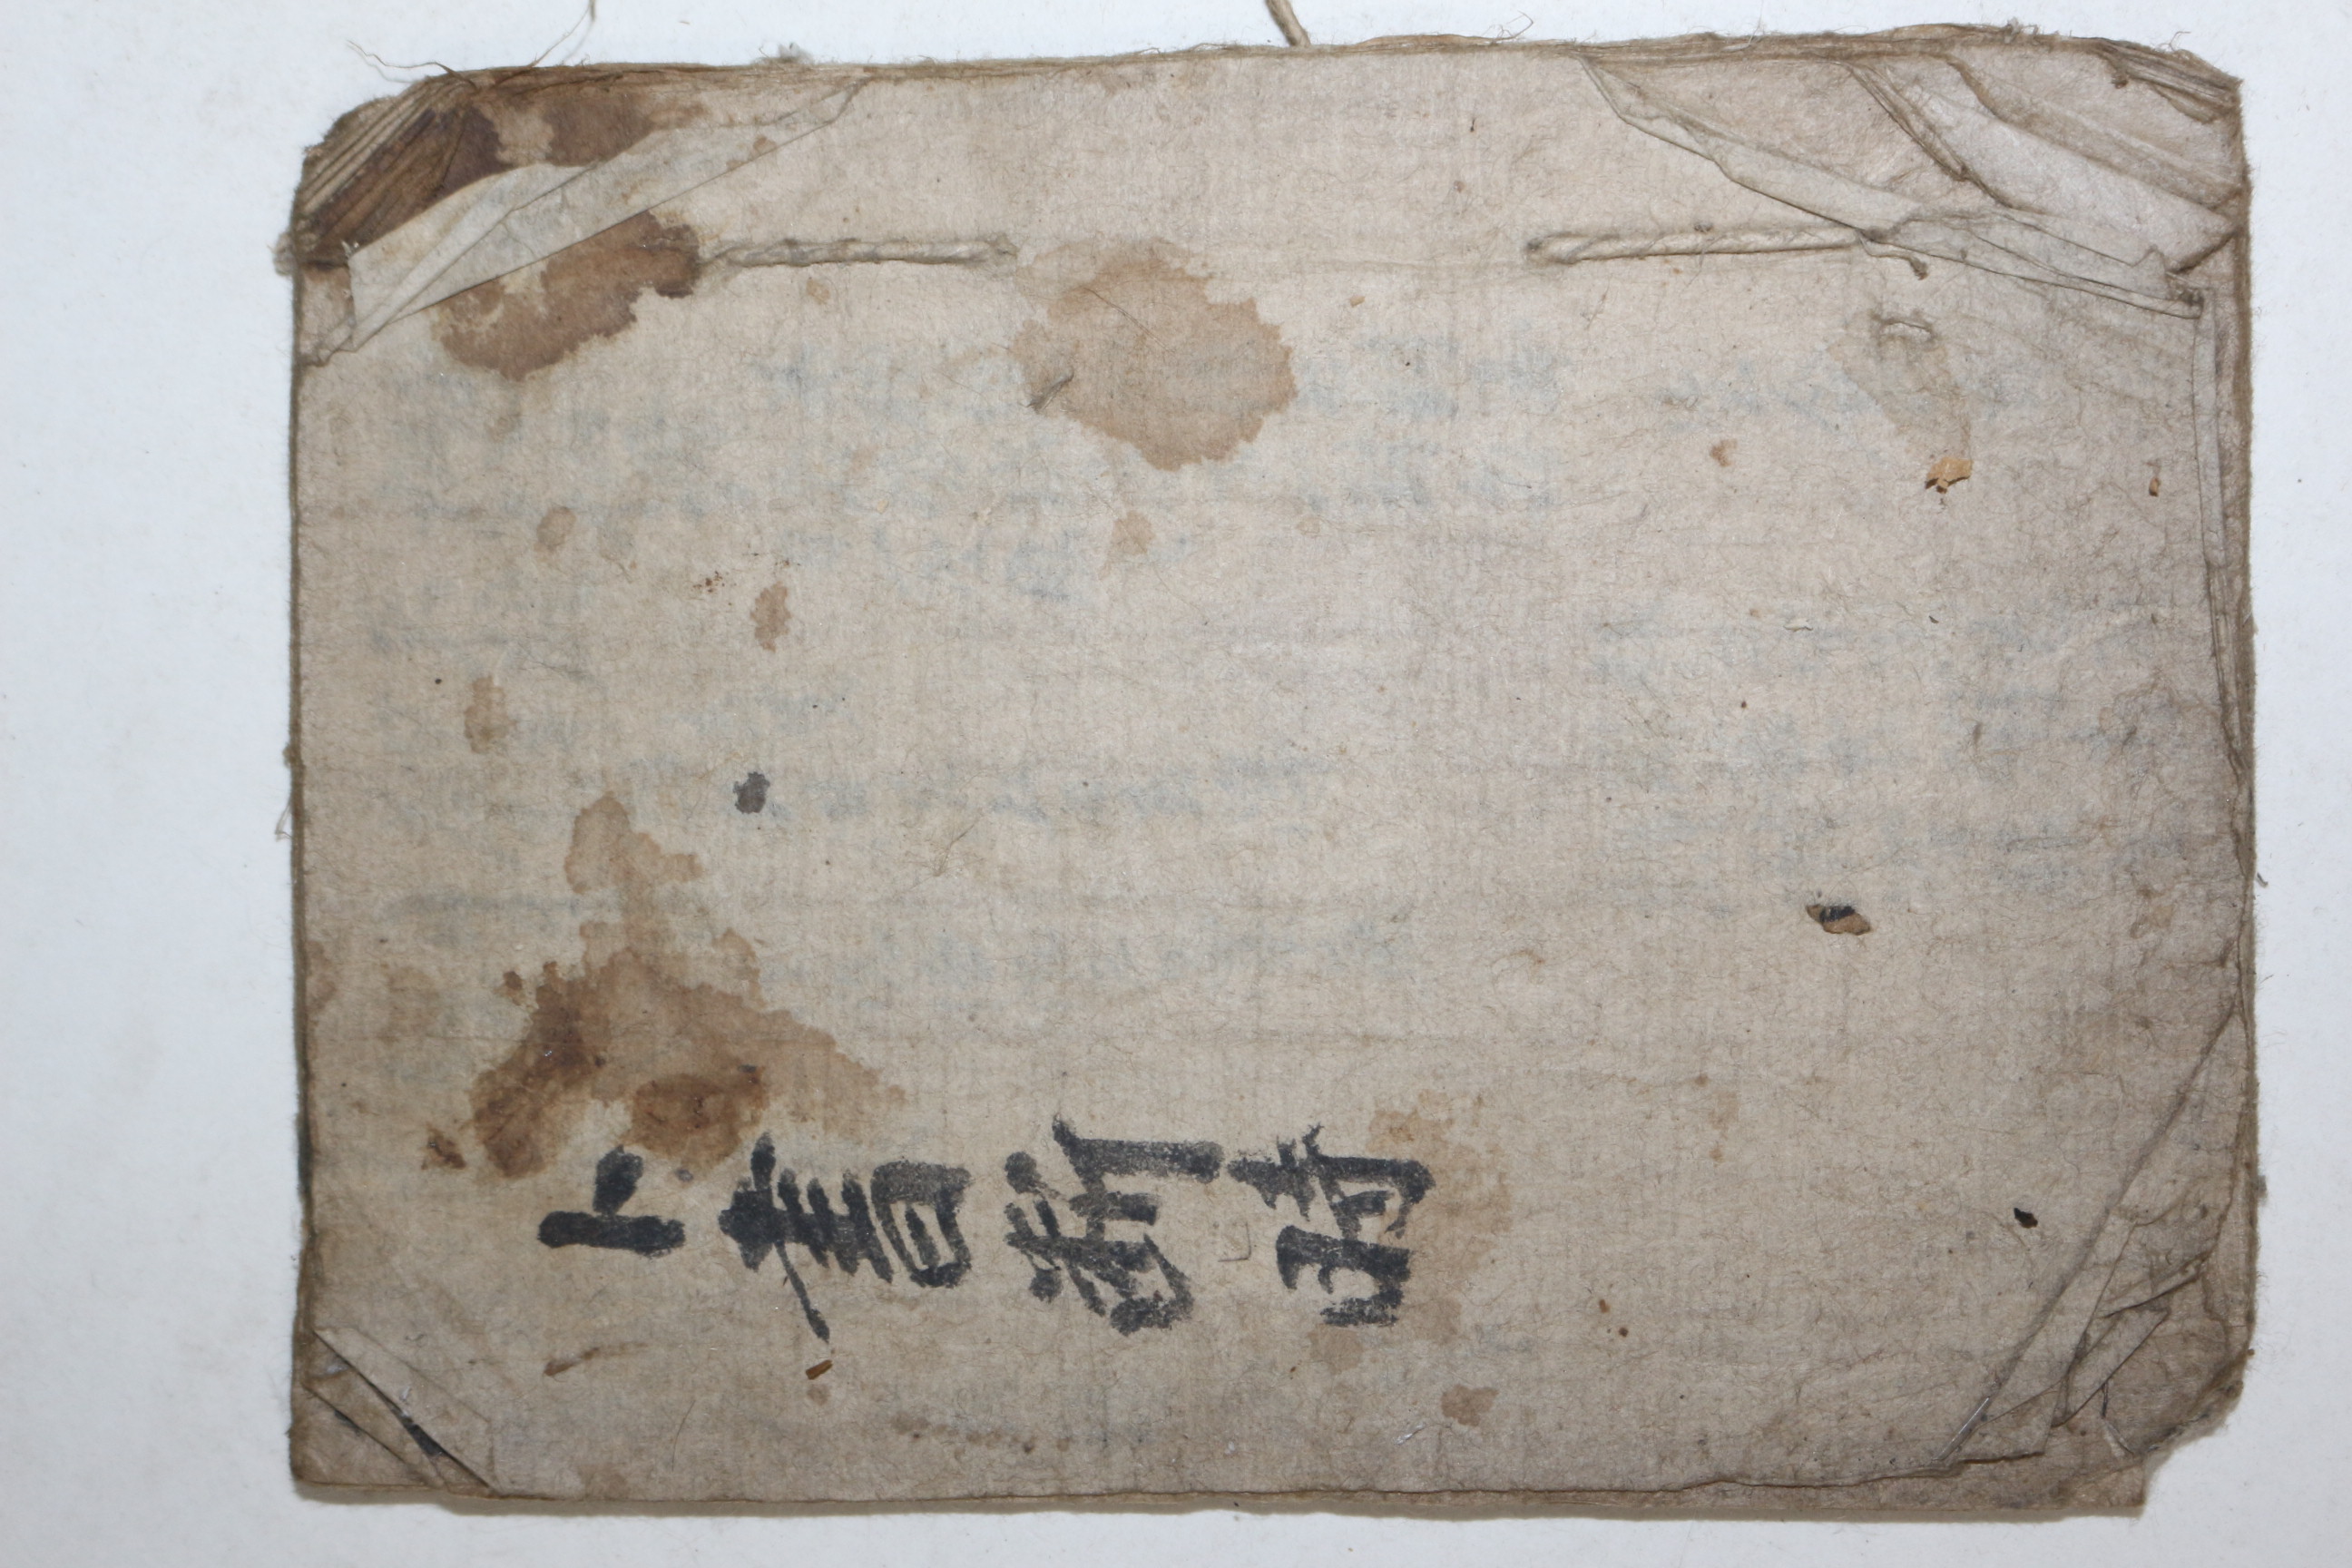 조선시대 고필사본 점서 역학서